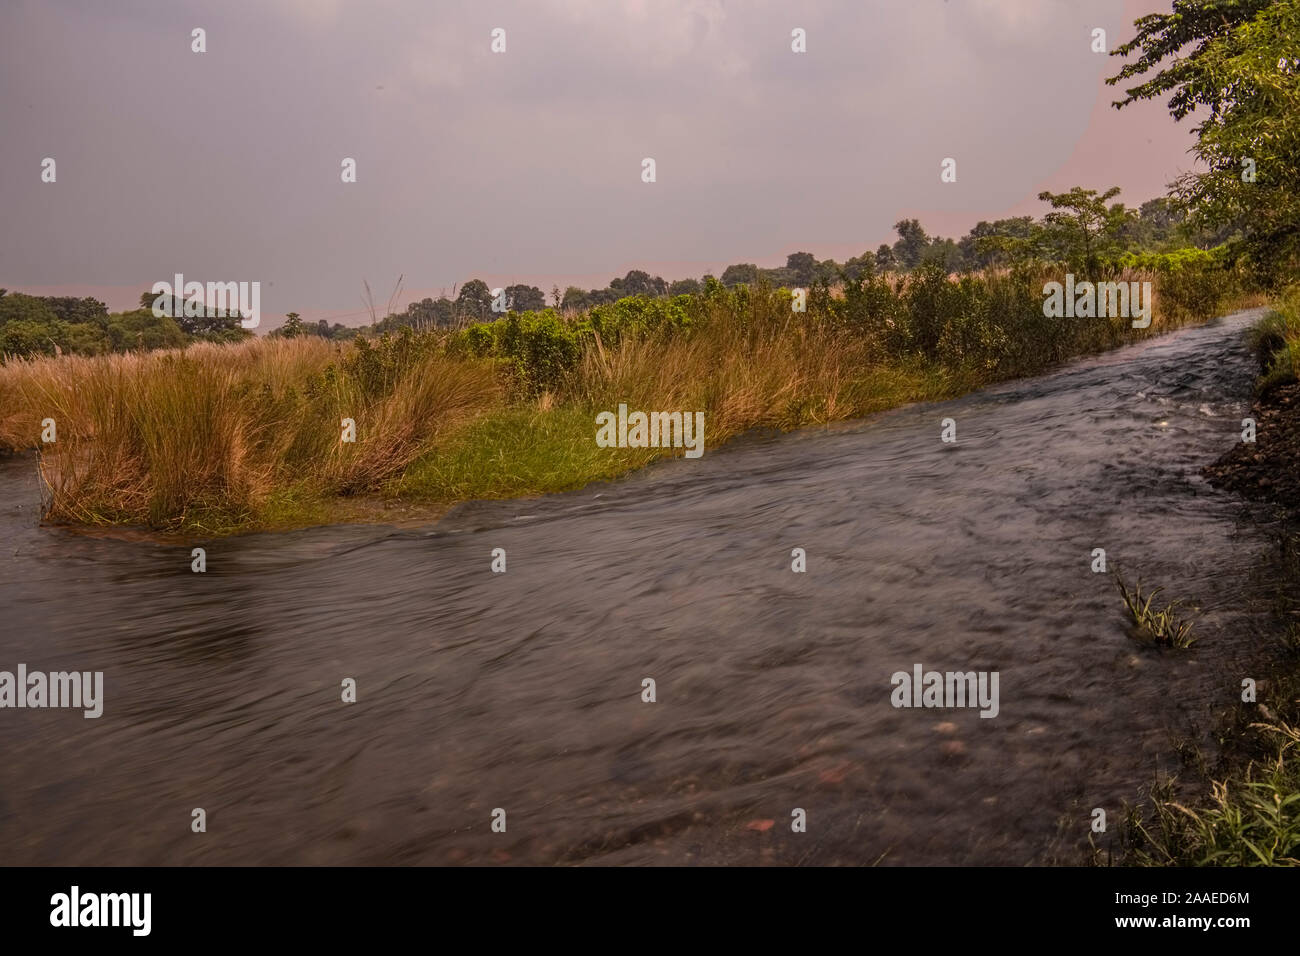 La belleza escénica de un río,aceleración,debajo de la hierba alta tierra,(Kash),Burudi Dam Area,Ghatsila, Jharkhand, India. Foto de stock